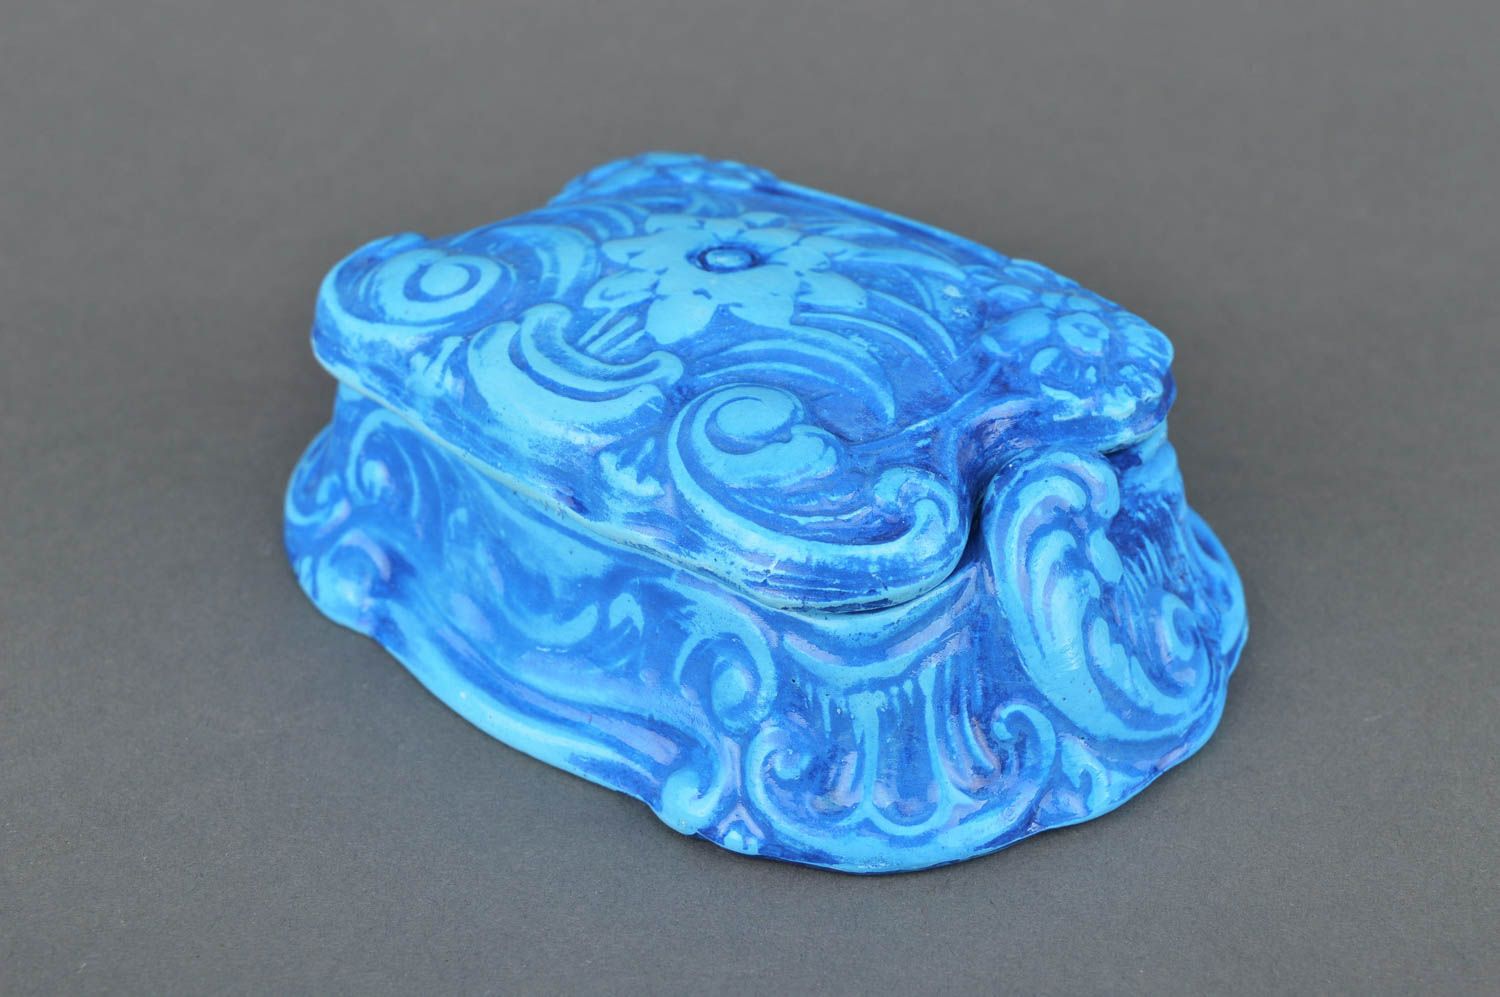 Шкатулка из гипса ручной работы винтажная шкатулка синяя подарок женщине фото 2